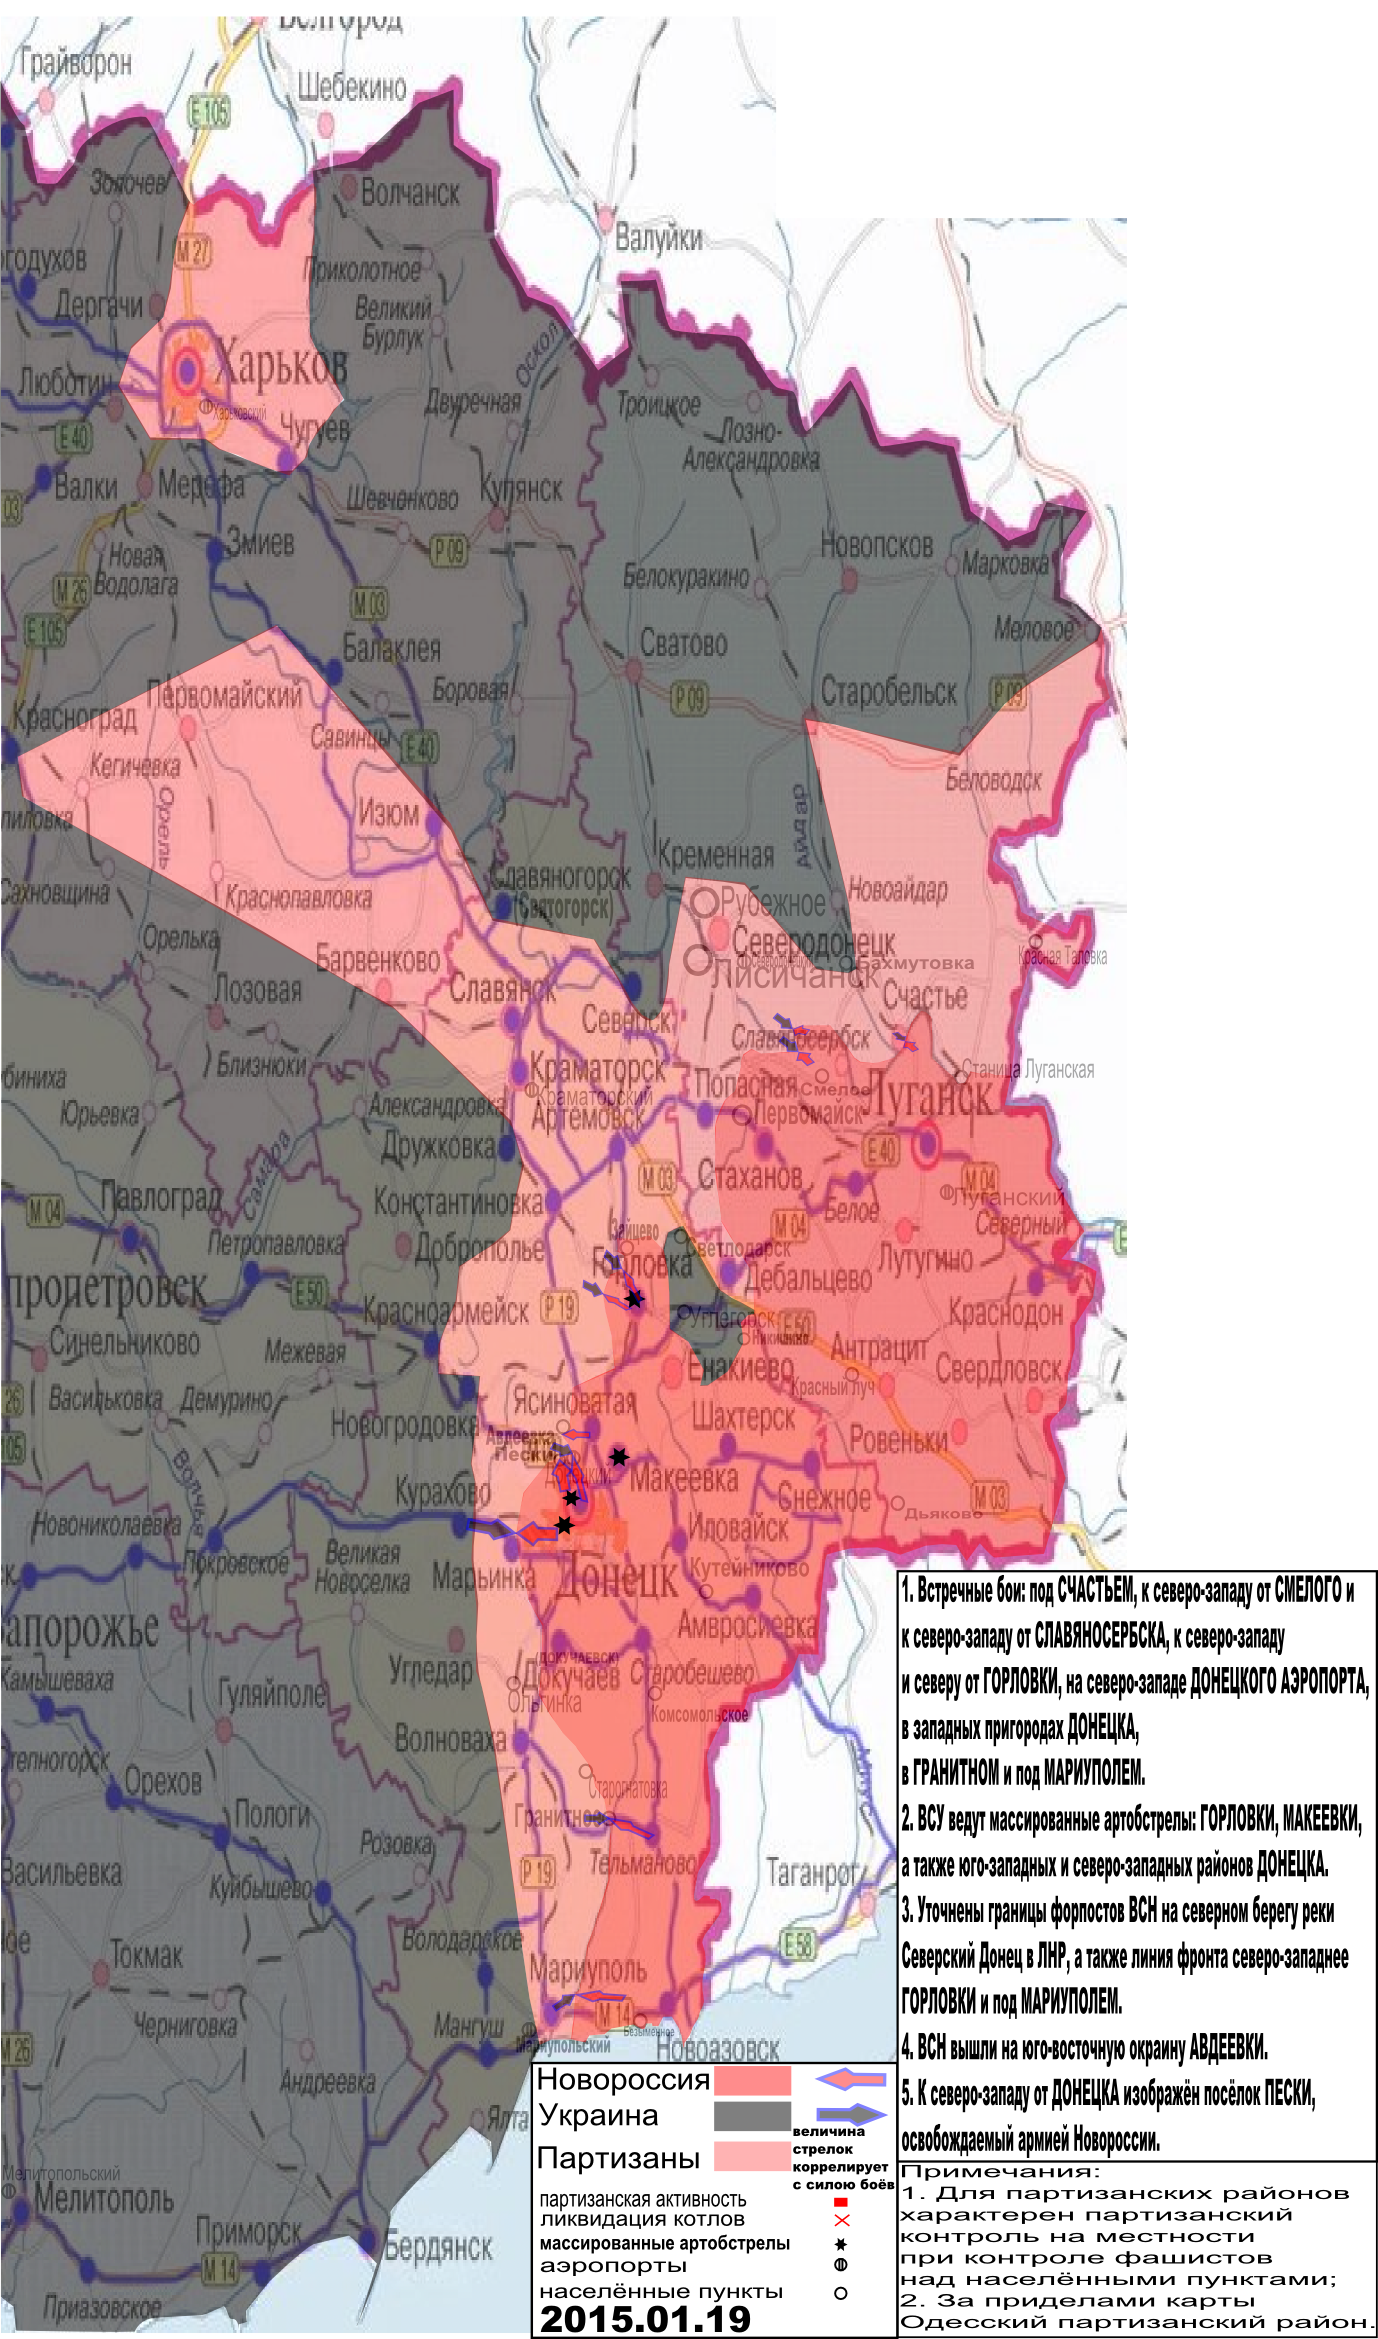 Карта боевых действий в Новороссии с обозначением зон партизанской активности за 19 января 2015.